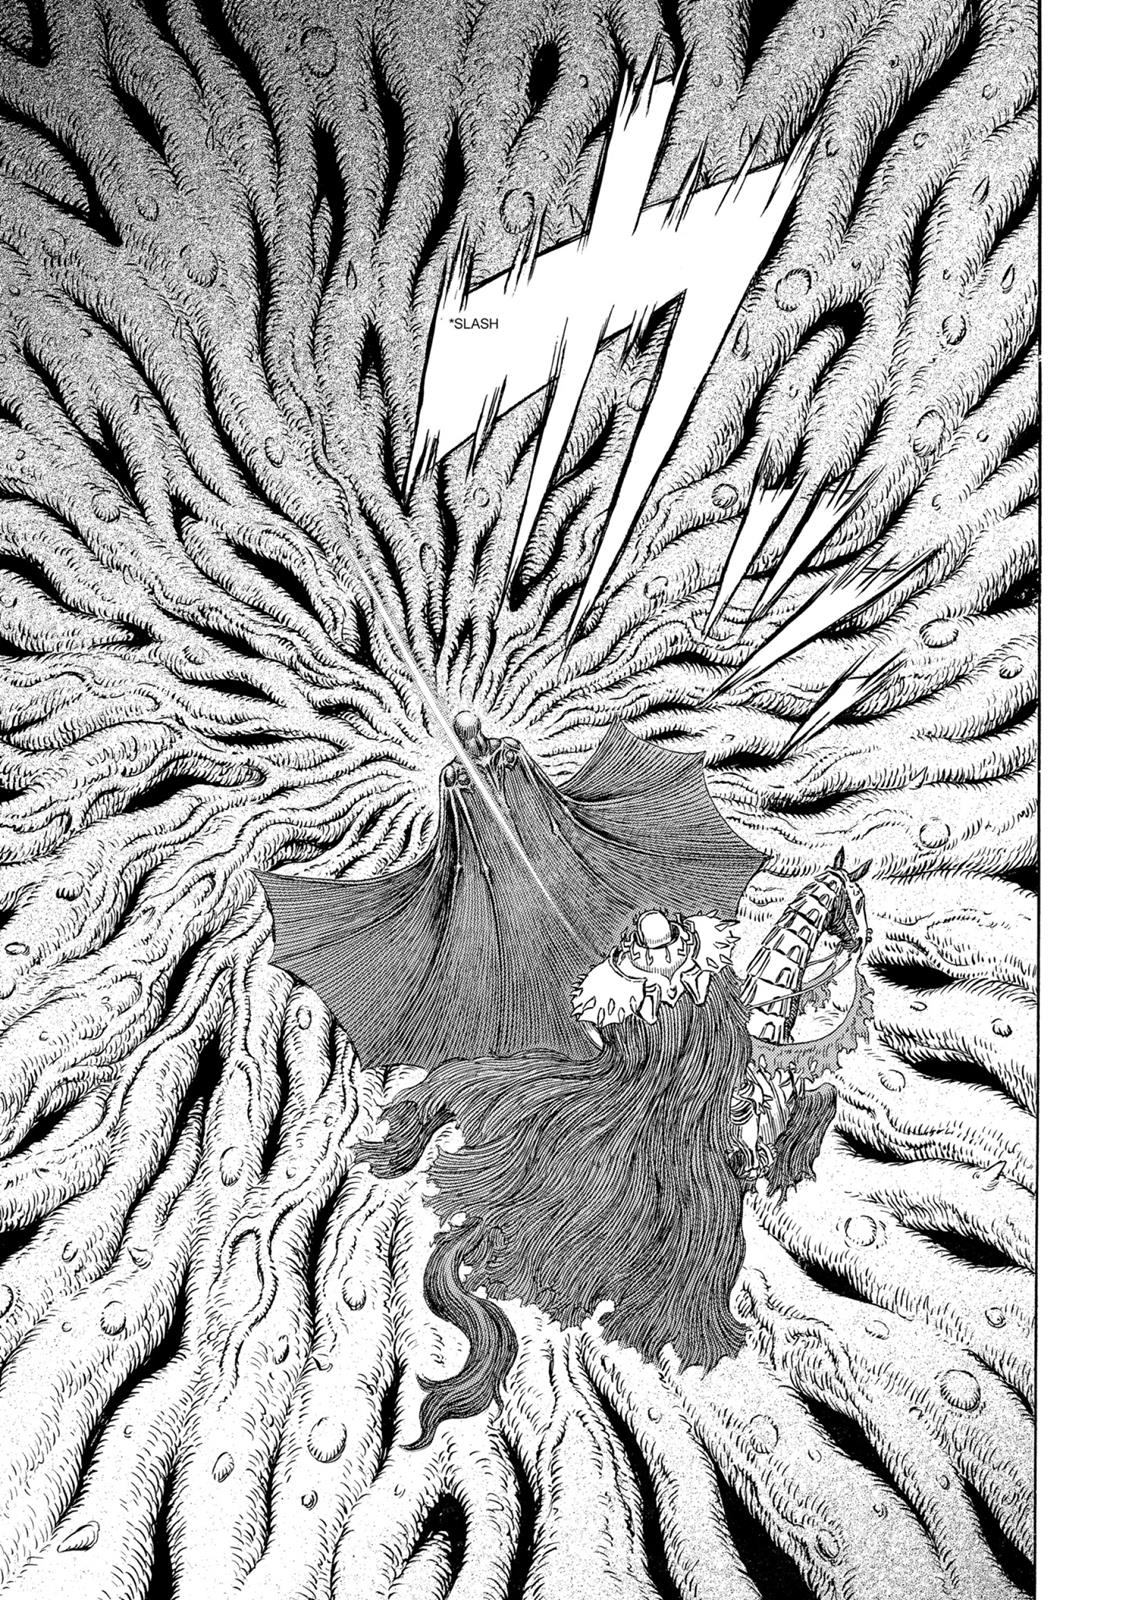 Berserk Manga Chapter 303 image 18